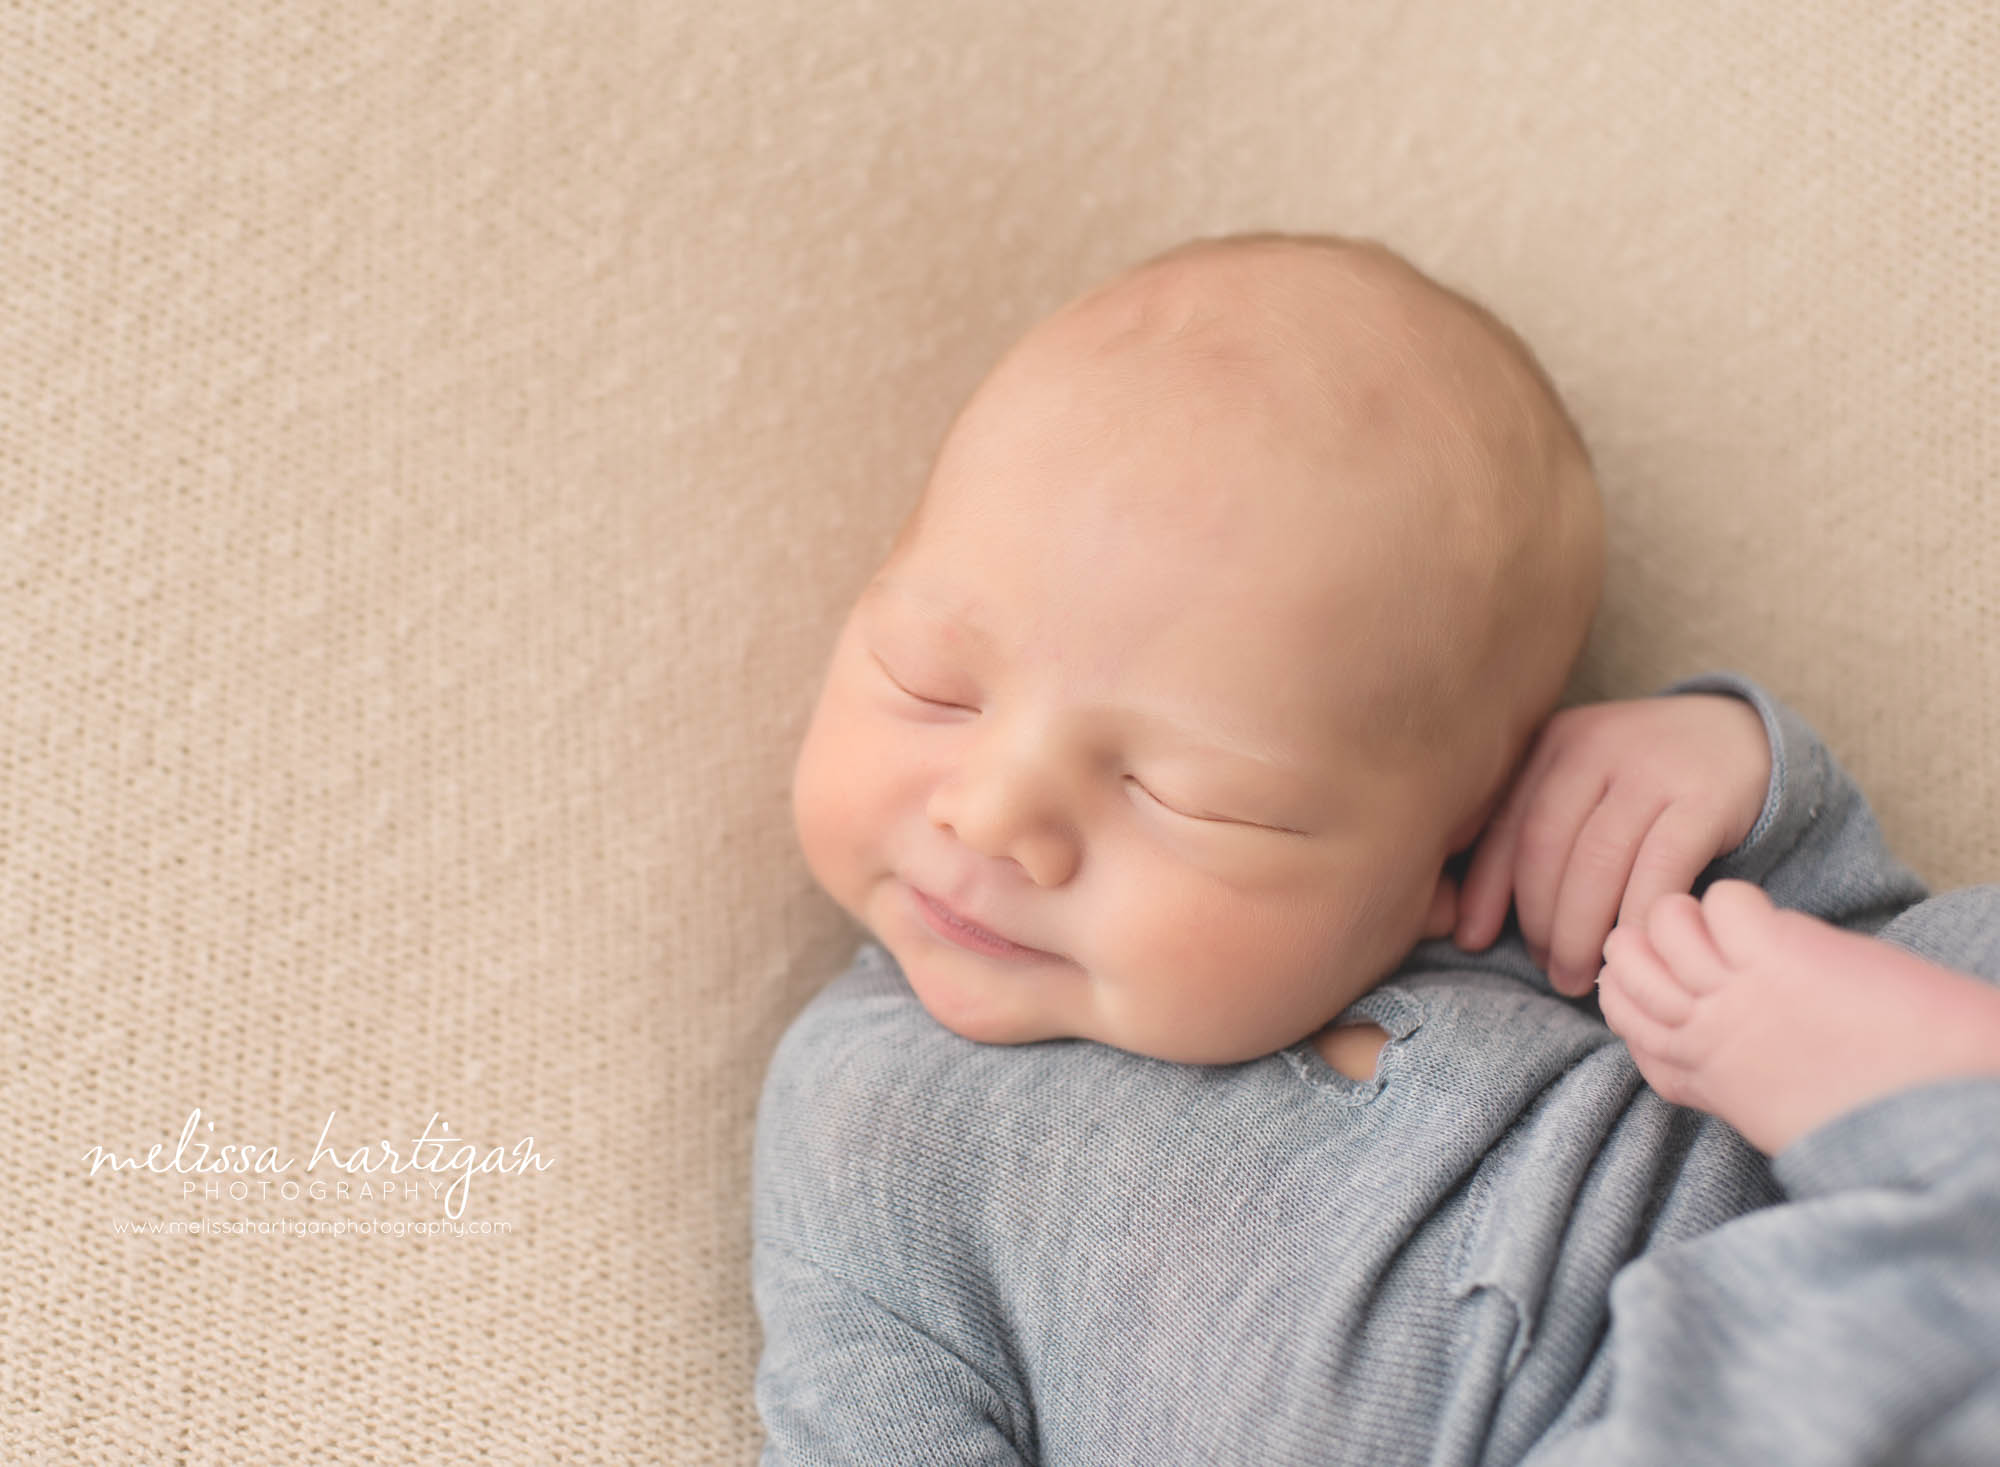 Melissa Hartigan Photography CT Newborn Photographer Braeden Newborn Session baby boy sleeping wearing knit blue onesie close-up